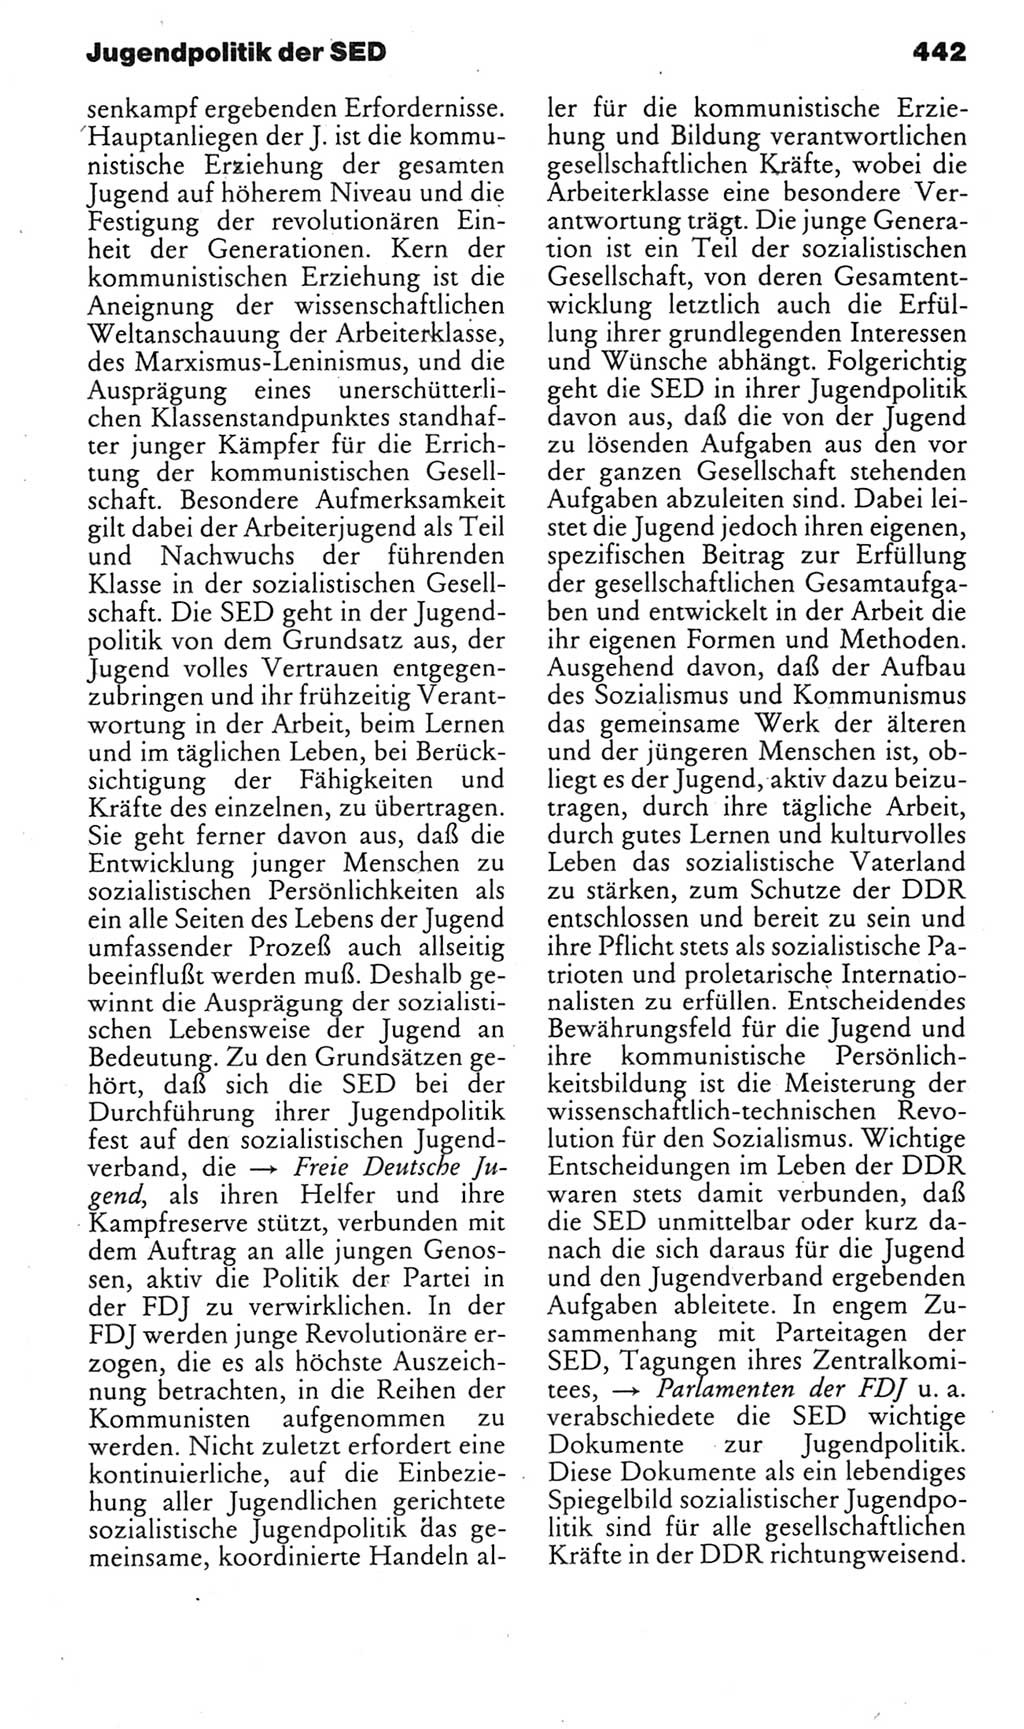 Kleines politisches Wörterbuch [Deutsche Demokratische Republik (DDR)] 1985, Seite 442 (Kl. pol. Wb. DDR 1985, S. 442)